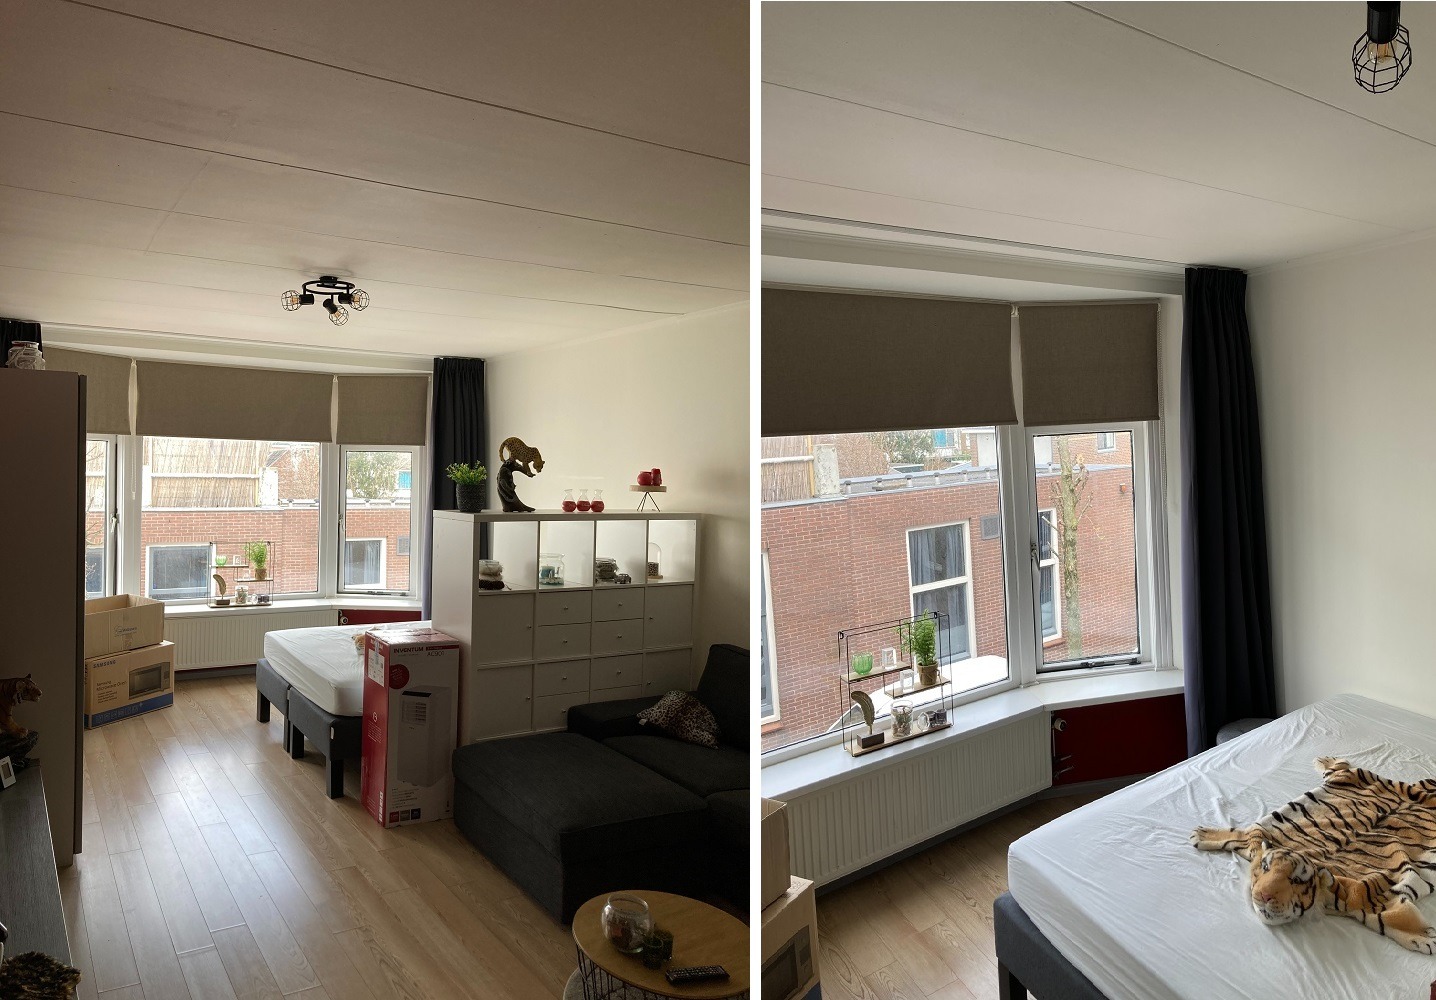 Woning / appartement - Bodegraven - Wilhelminastraat 5